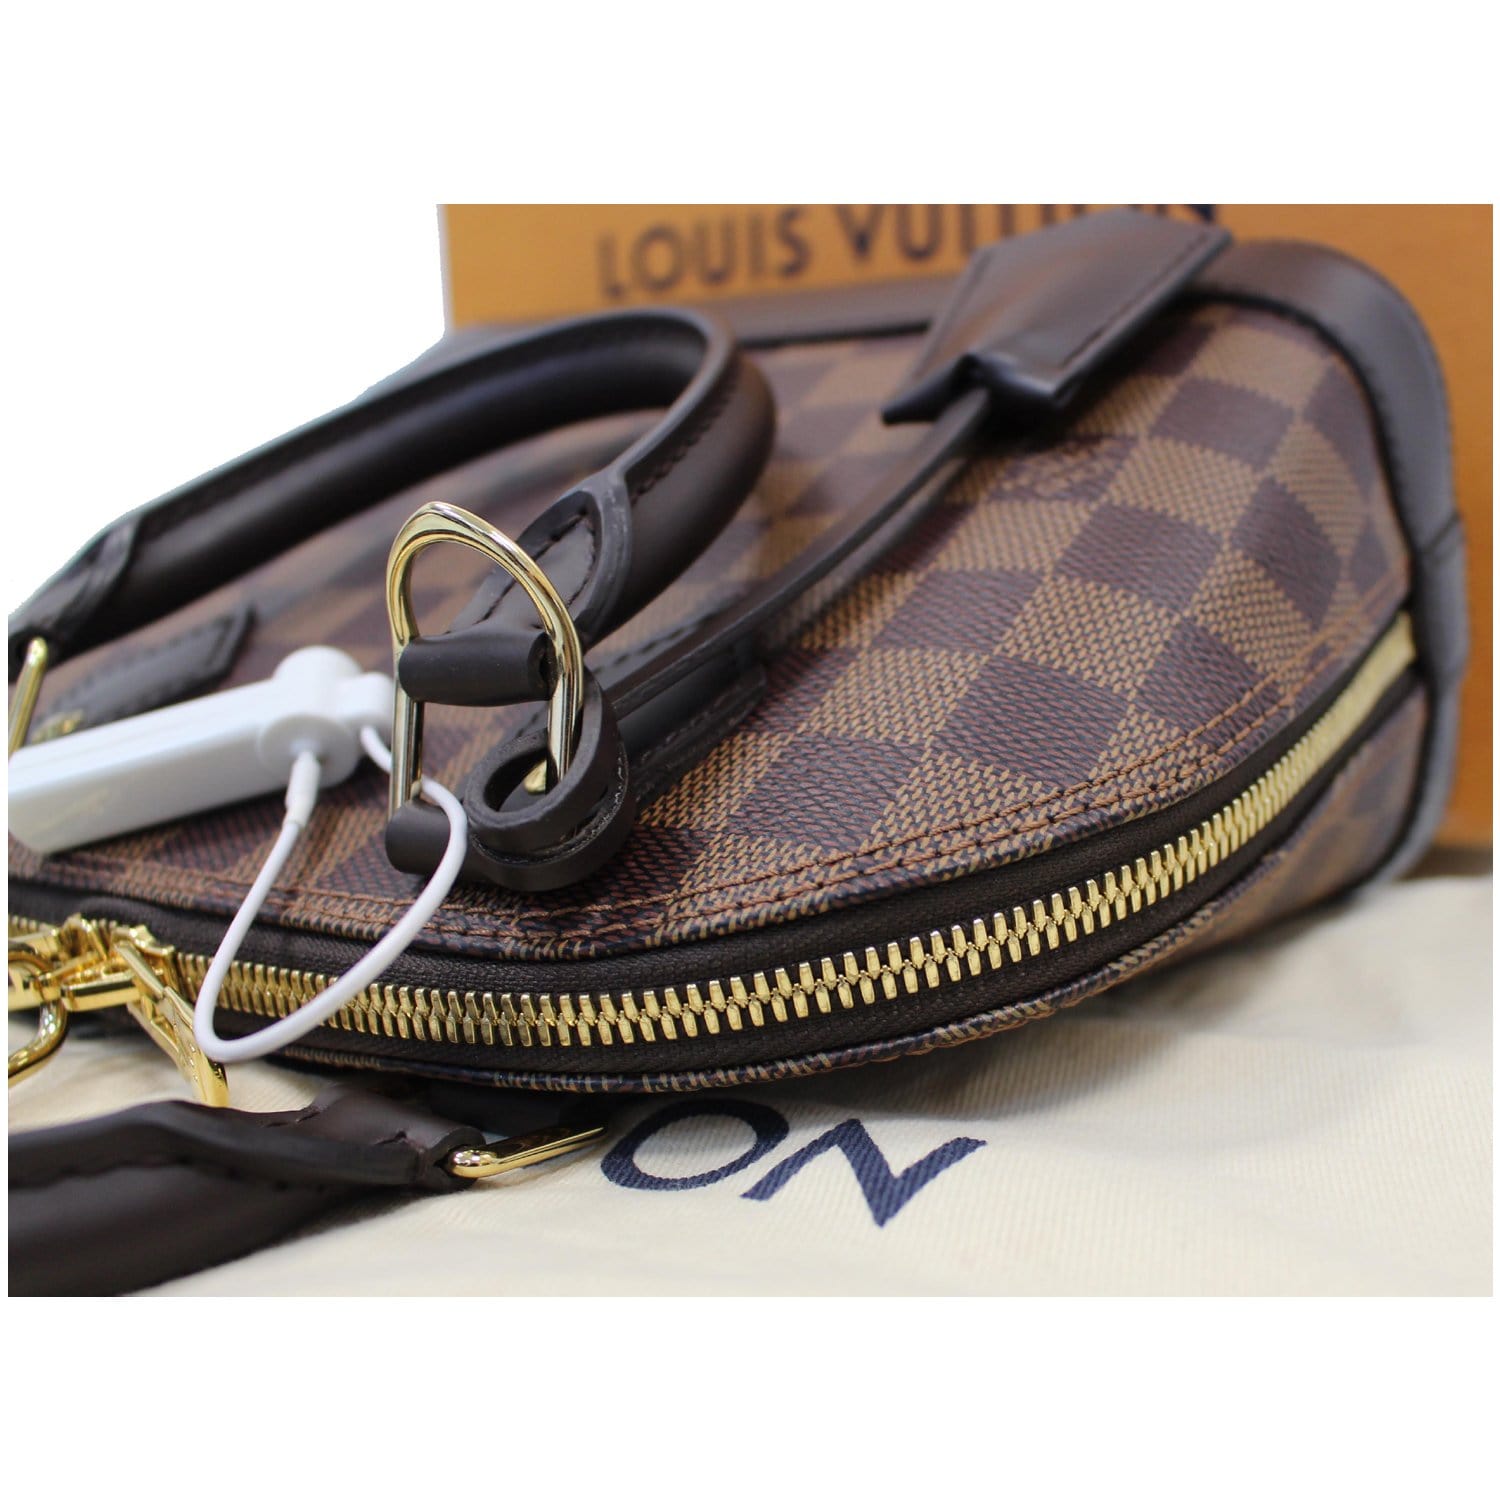 Alma bb cloth handbag Louis Vuitton Brown in Cloth - 24984206